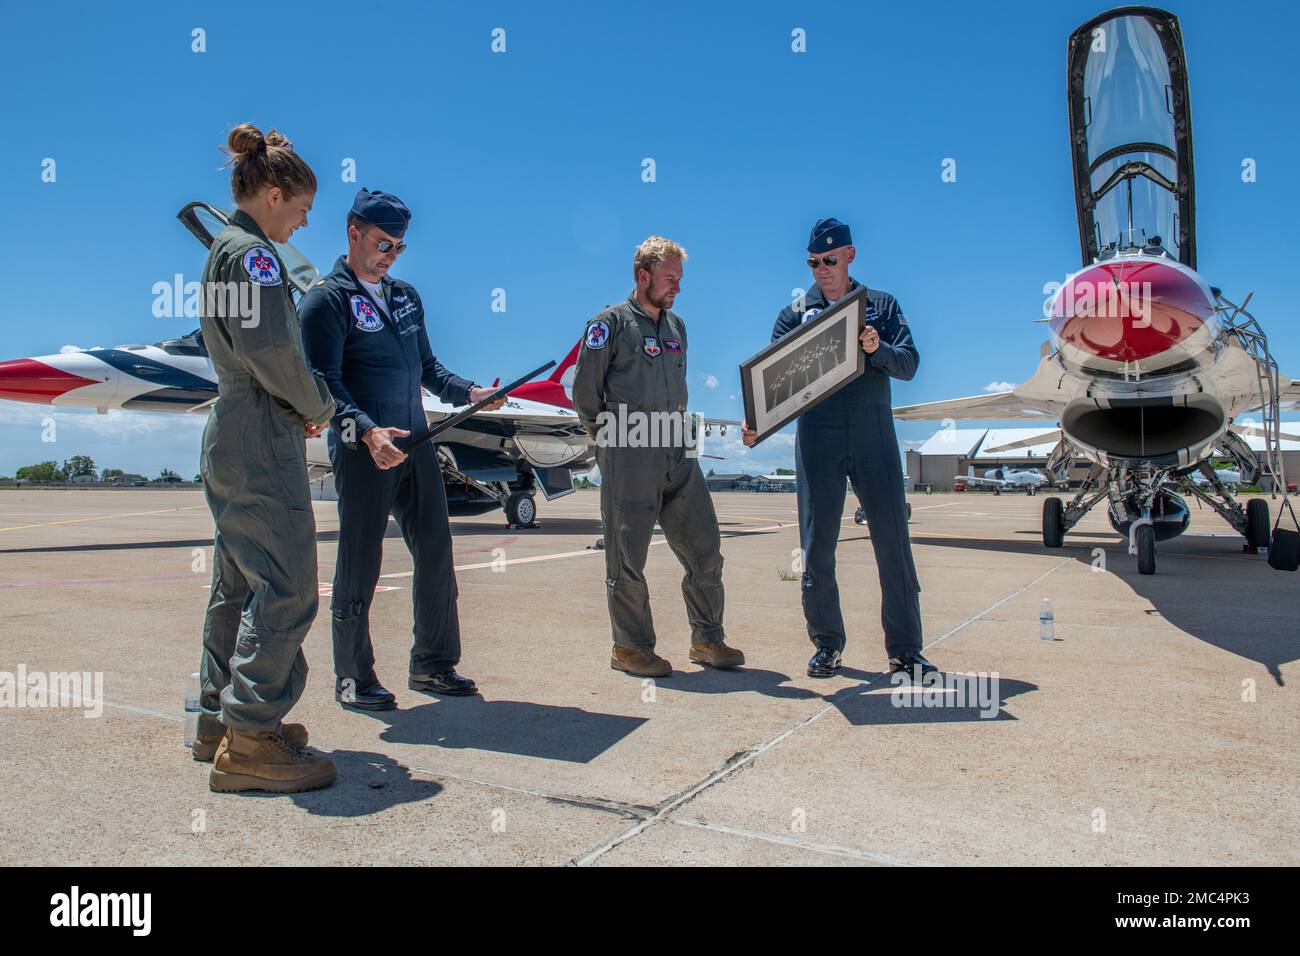 Pilotes des États-Unis L'équipe de démonstration des Thunderbirds de la Force aérienne présente les médaillés d'or olympiques, Ashley Caldwell et Justin Schoenfeld, avec des photos signées après un vol « Hometown Hero » avant les guerriers au cours du spectacle aérien et spatial de Wasatch sur 24 juin 2022 à la base aérienne de Hill, Utah. Après trois heures d’entraînement avant vol, Caldwell et Schoenfeld sont montés à bord du poste de pilotage avec deux pilotes qui ont fait l’expérience de 9G en survolant le désert ouest de l’Utah. Banque D'Images